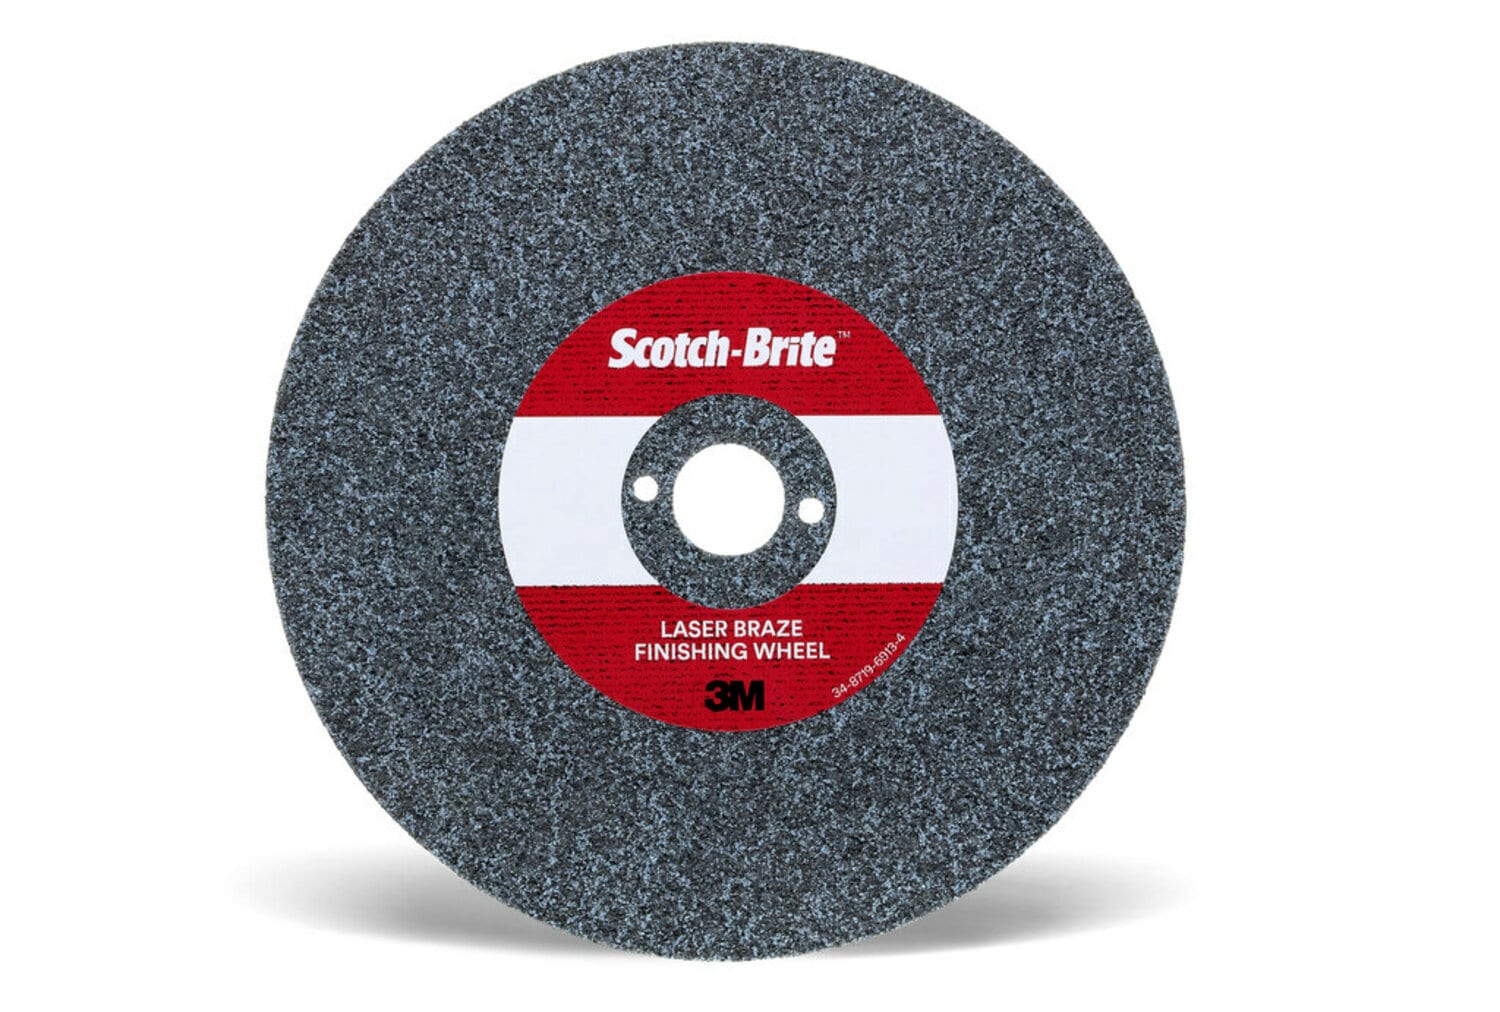 7100115840 - Scotch-Brite Laser Braze Finishing Wheel, 4 in x 3.5mm x 1/4 in, 20
ea/Case